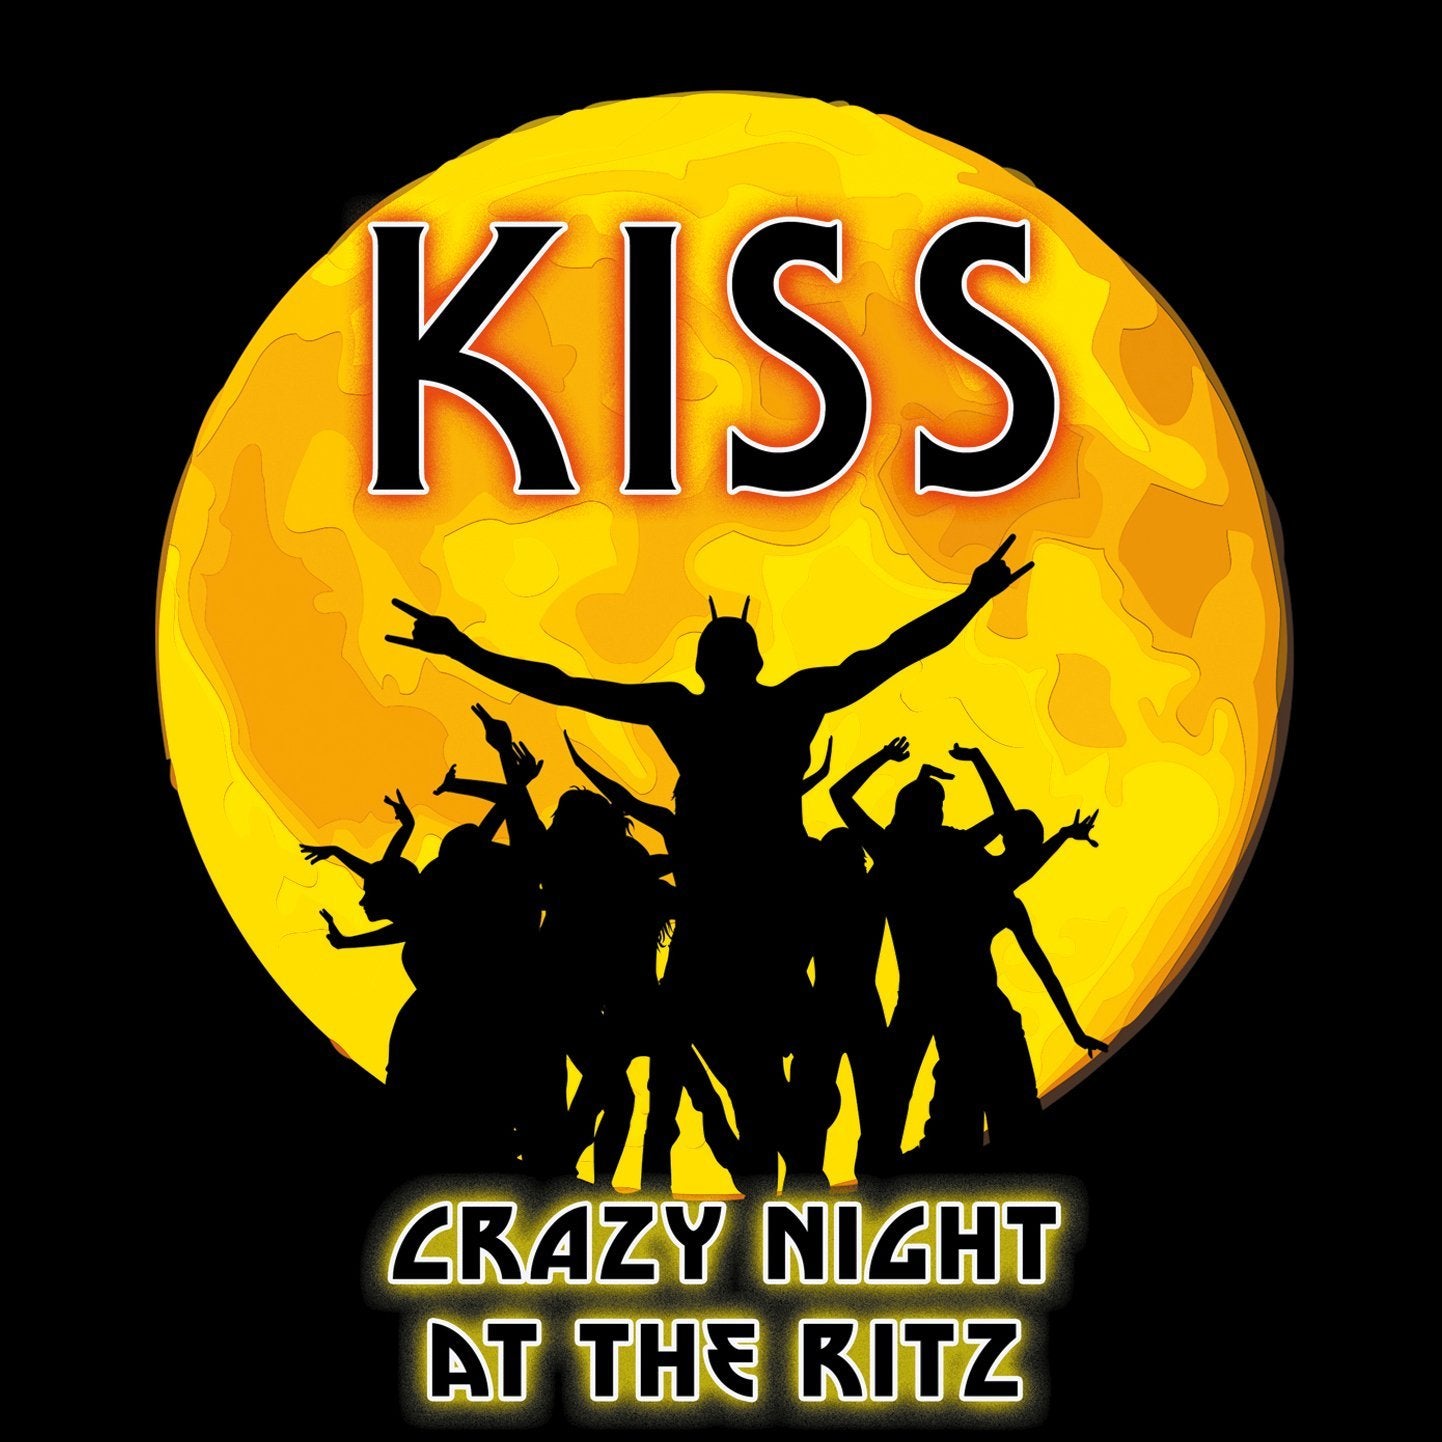 KISS - GODS OF THUNDER: THE LEGENDARY BROADCASTS - 4 CD BOX SET - Coda Records